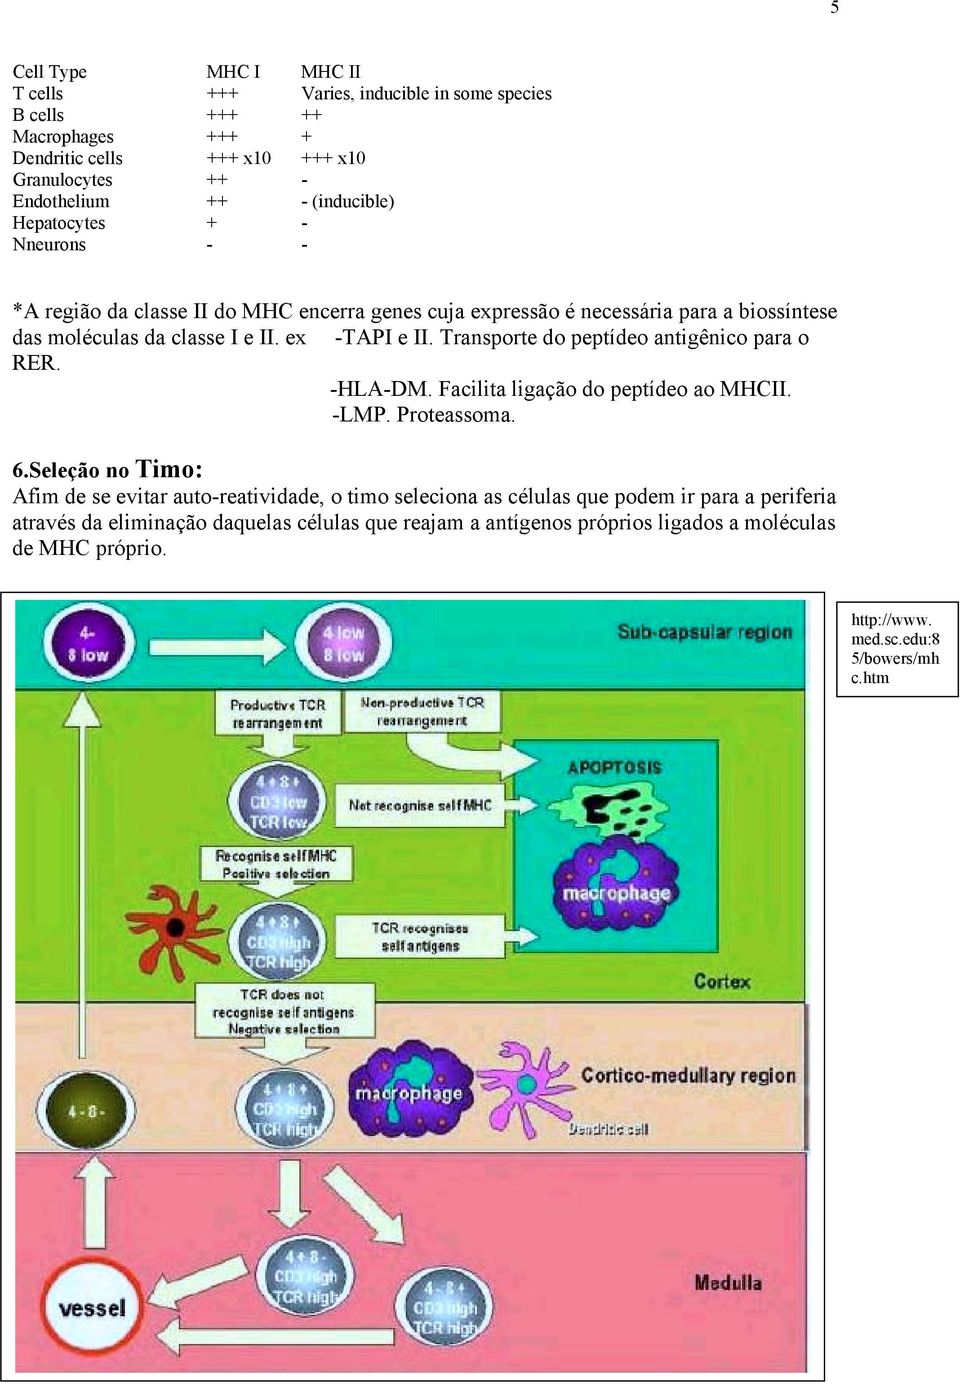 Transporte do peptídeo antigênico para o RER. -HLA-DM. Facilita ligação do peptídeo ao MHCII. -LMP. Proteassoma. 6.